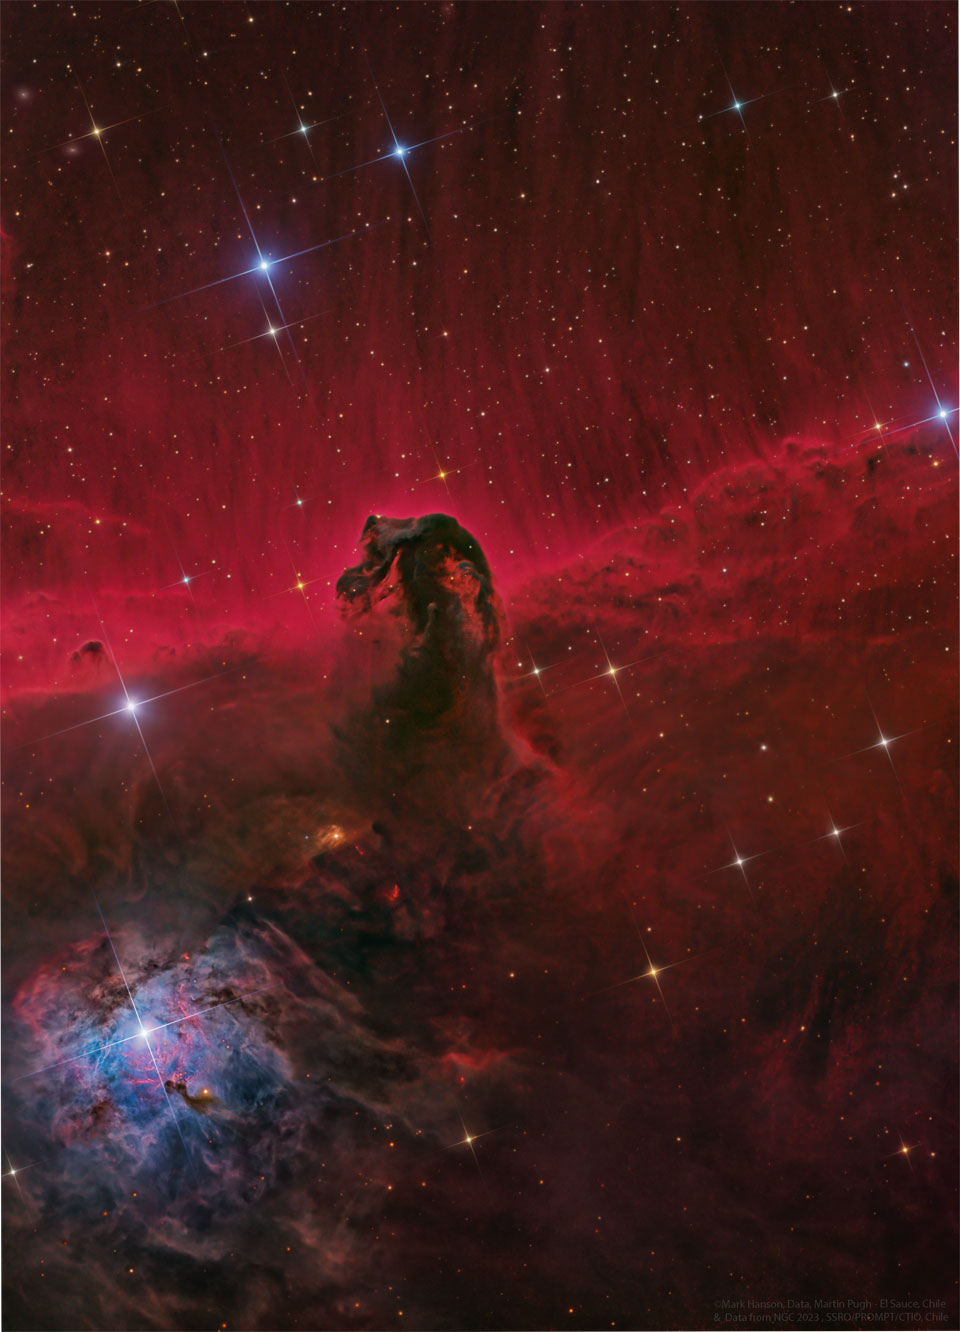 一个类似马头的暗星云在红色的背景前被拍摄下来。恒星出现在整个图像中。有关更多详细信息，请参阅说明。